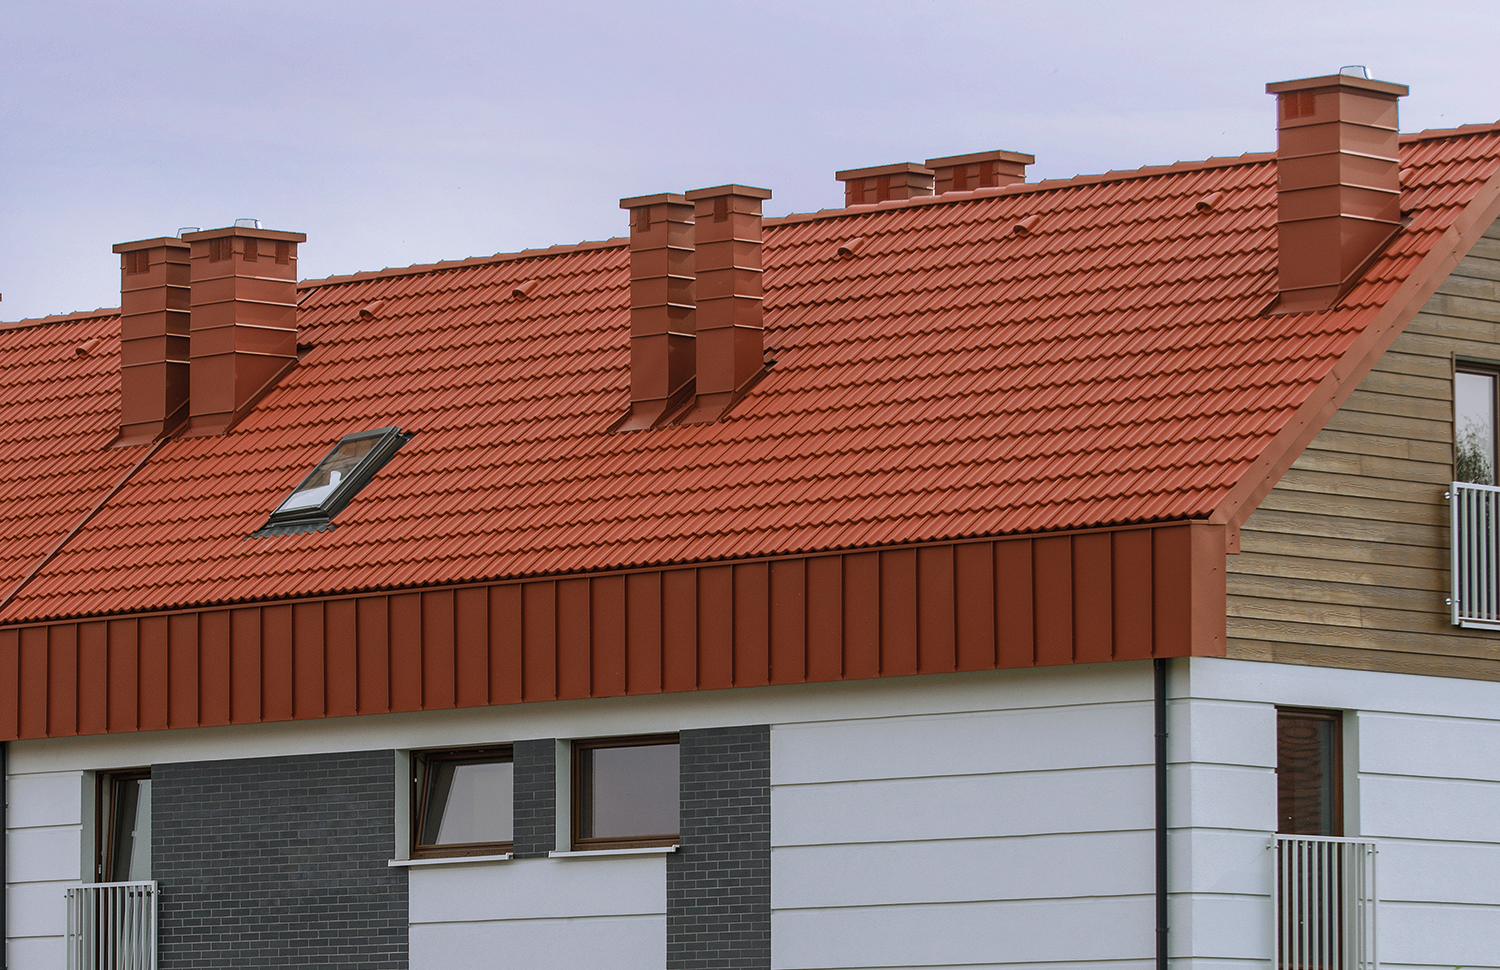 Prosty w budowie dach wykończony dachówką cementową to rozwiązanie przystępne cenowo, a przy tym trwałe i estetyczne (fot. CREATON, na zdjęciu model GÖTEBORG)